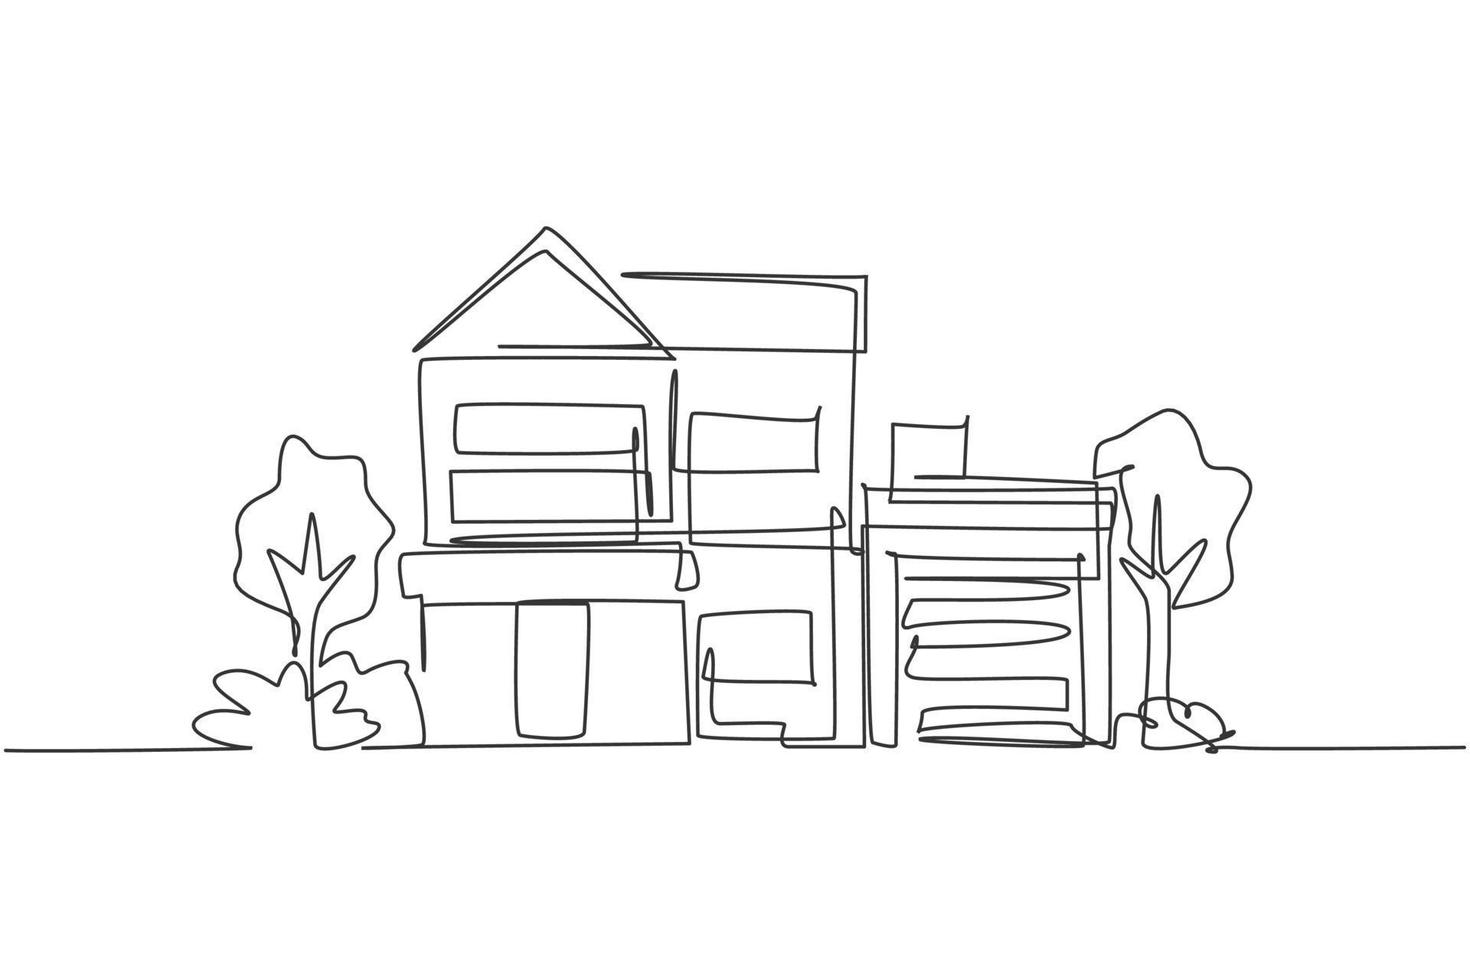 Simple dibujo de una linea verde minimalista modesta casa en la ciudad. casa arquitectura edificio construcción aislado garabato concepto mínimo. Ilustración de vector gráfico de diseño de dibujo de línea continua de moda